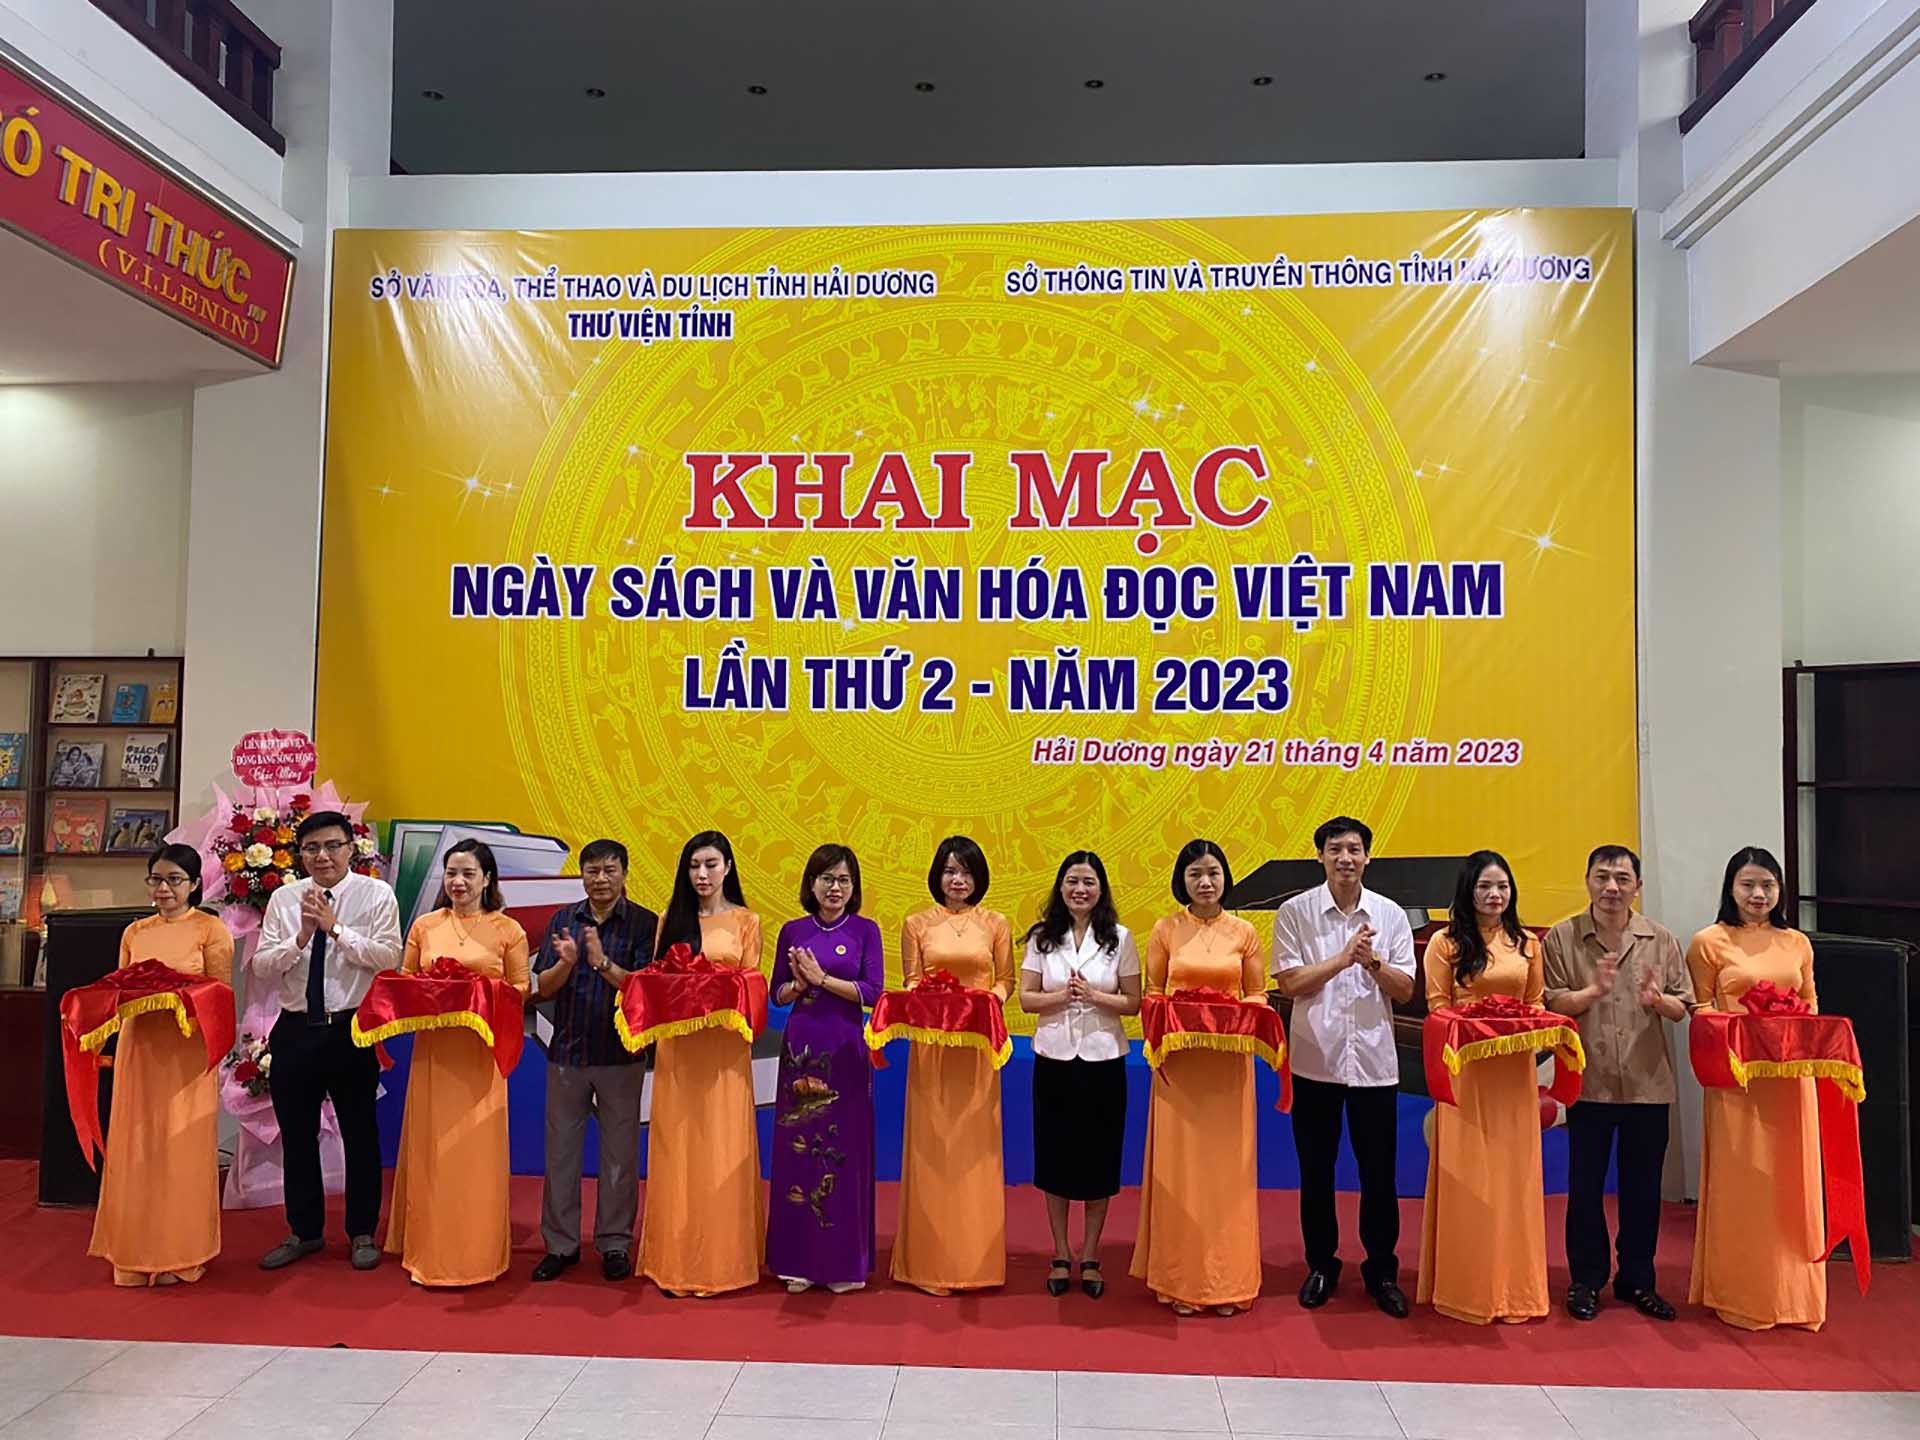 Các đại biểu cắt băng khai mạc Ngày sách và Văn hóa đọc Việt Nam lần thứ 2 năm 2023.